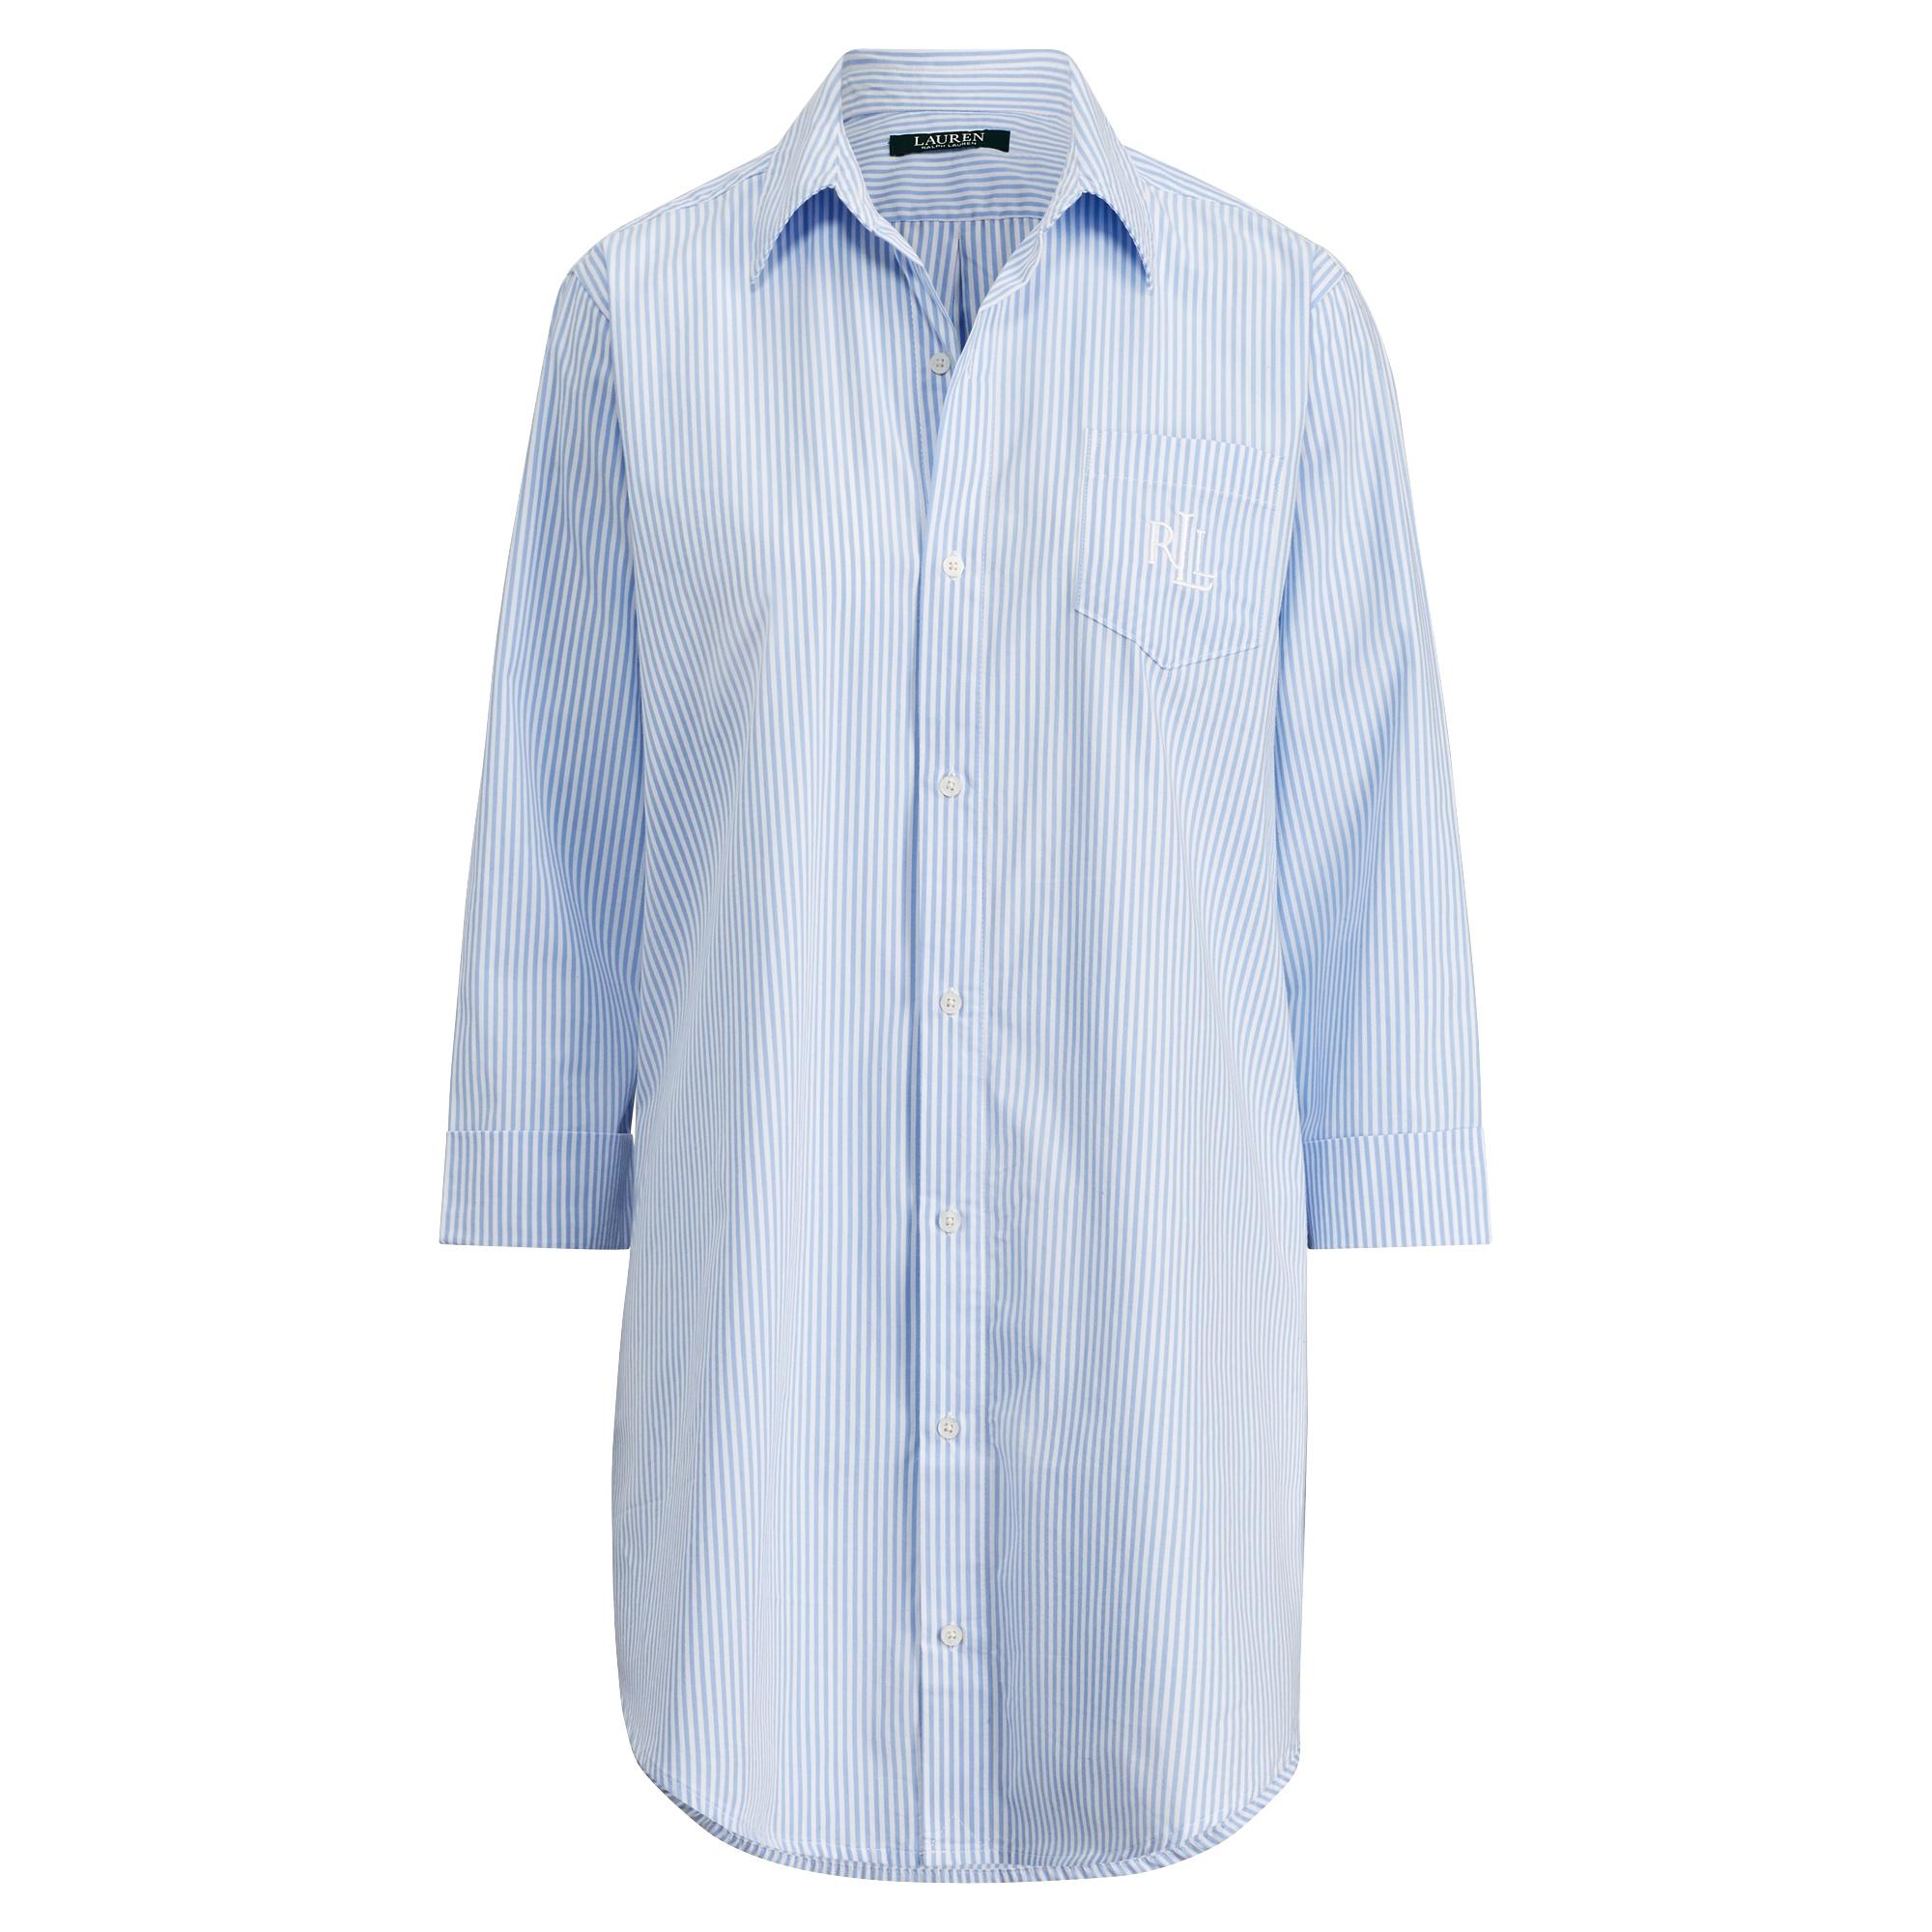 Ralph Lauren Striped Cotton Sleep Shirt in Pale Blue Stripe (Blue) - Lyst